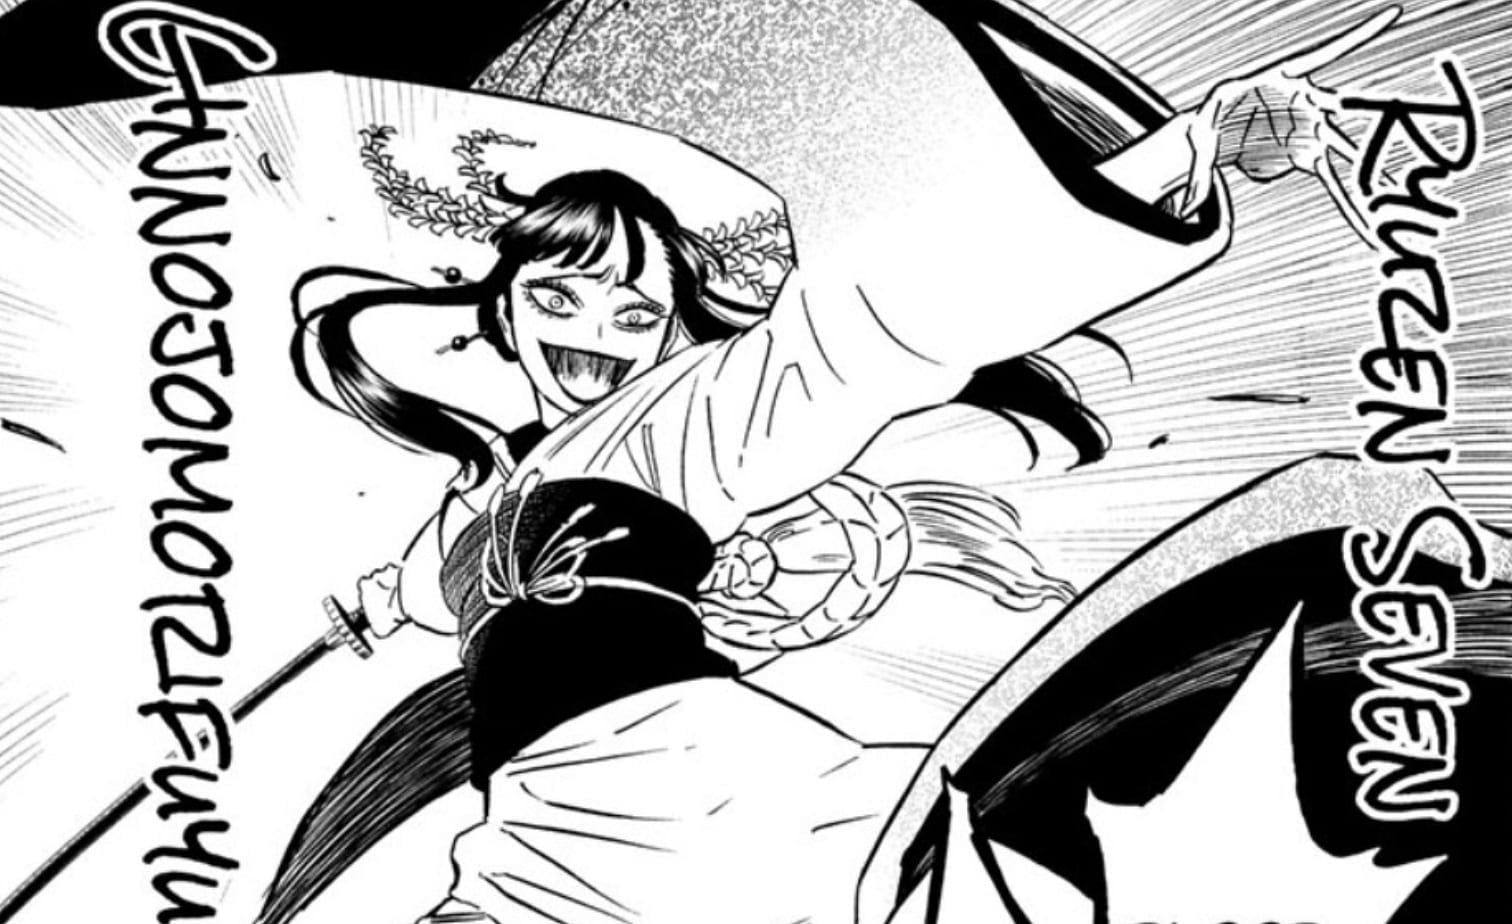 Kezokaku Ginnojomorifuyu as seen in the manga (Image via Shueisha)